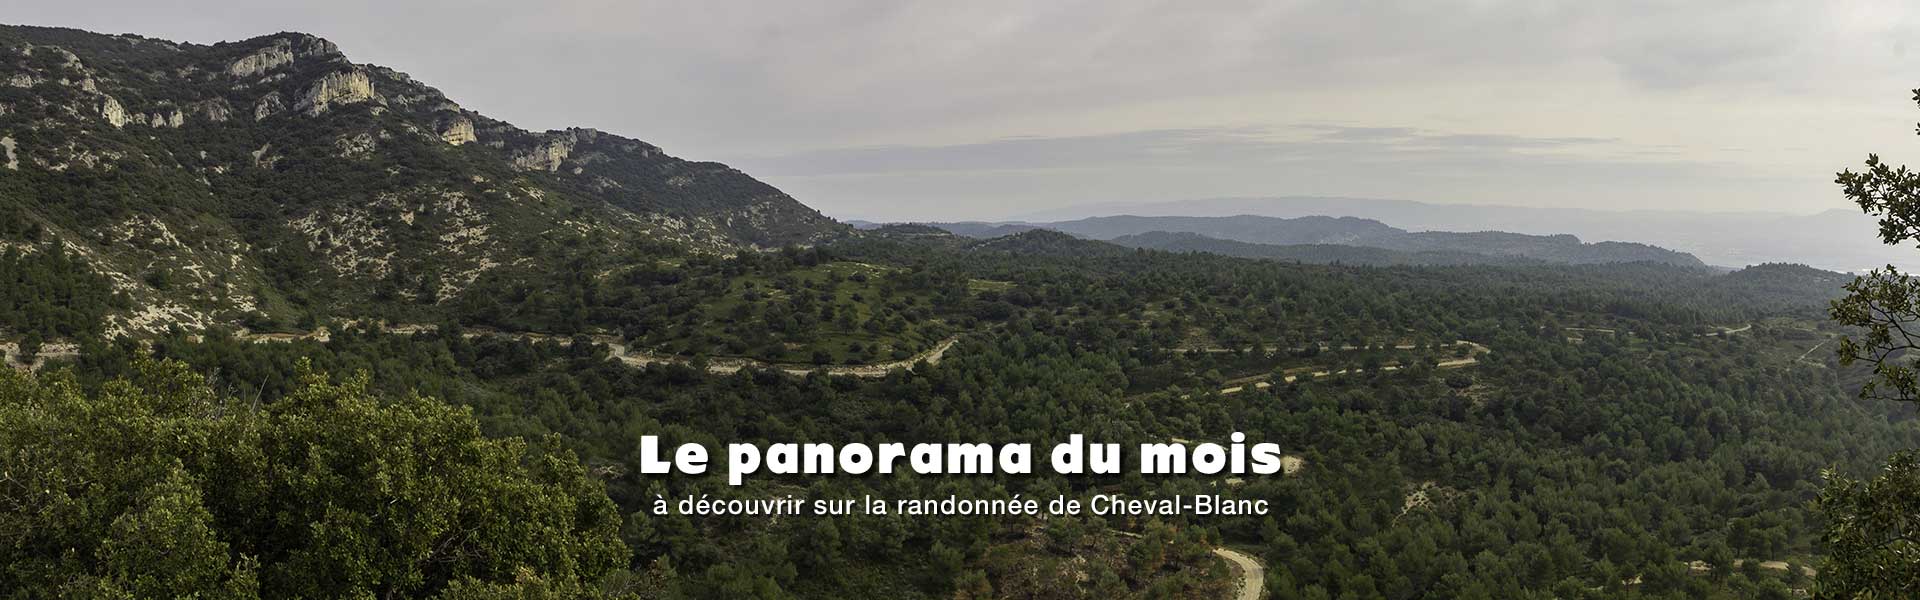 Panorama à découvrir sur la randonnée de Cheval-Blanc et le tour du sommet de Valloncourt dans le massif du petit Luberon en Vaucluse